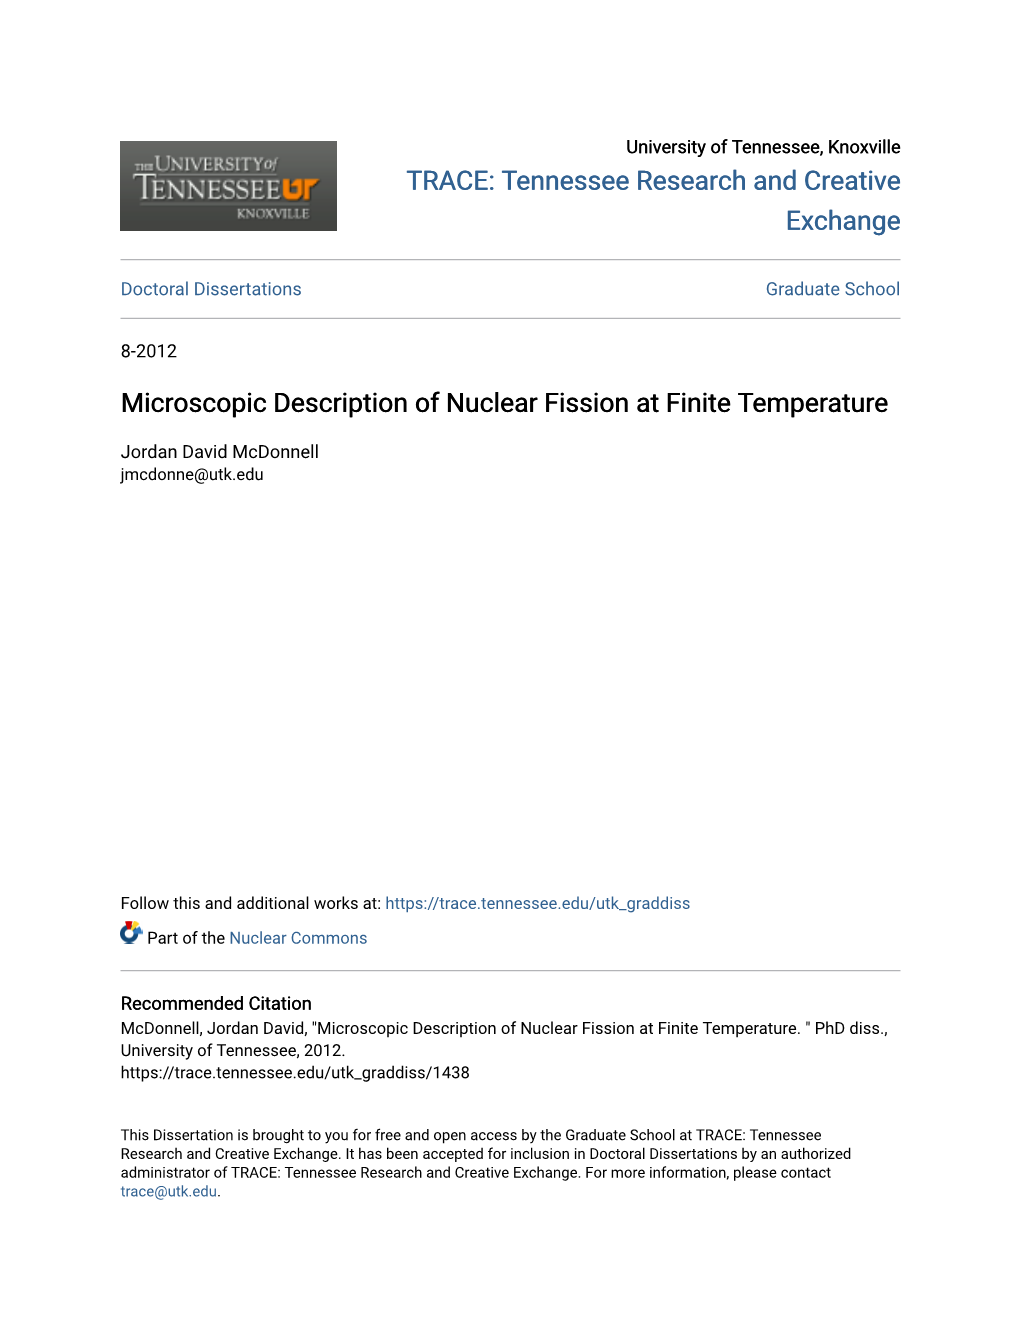 Microscopic Description of Nuclear Fission at Finite Temperature